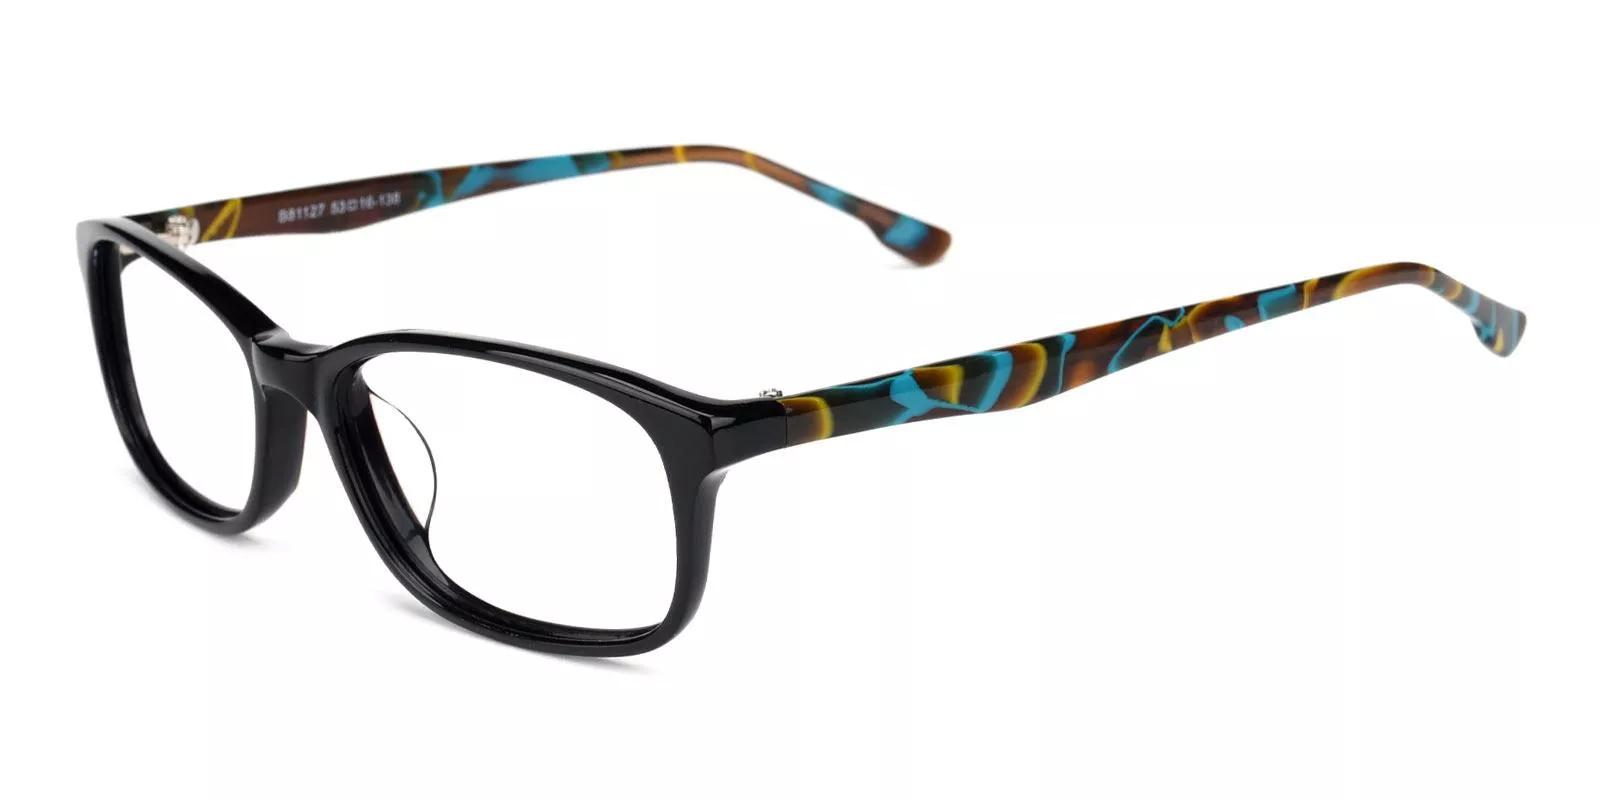 Tendant Black Acetate Eyeglasses , UniversalBridgeFit Frames from ABBE Glasses